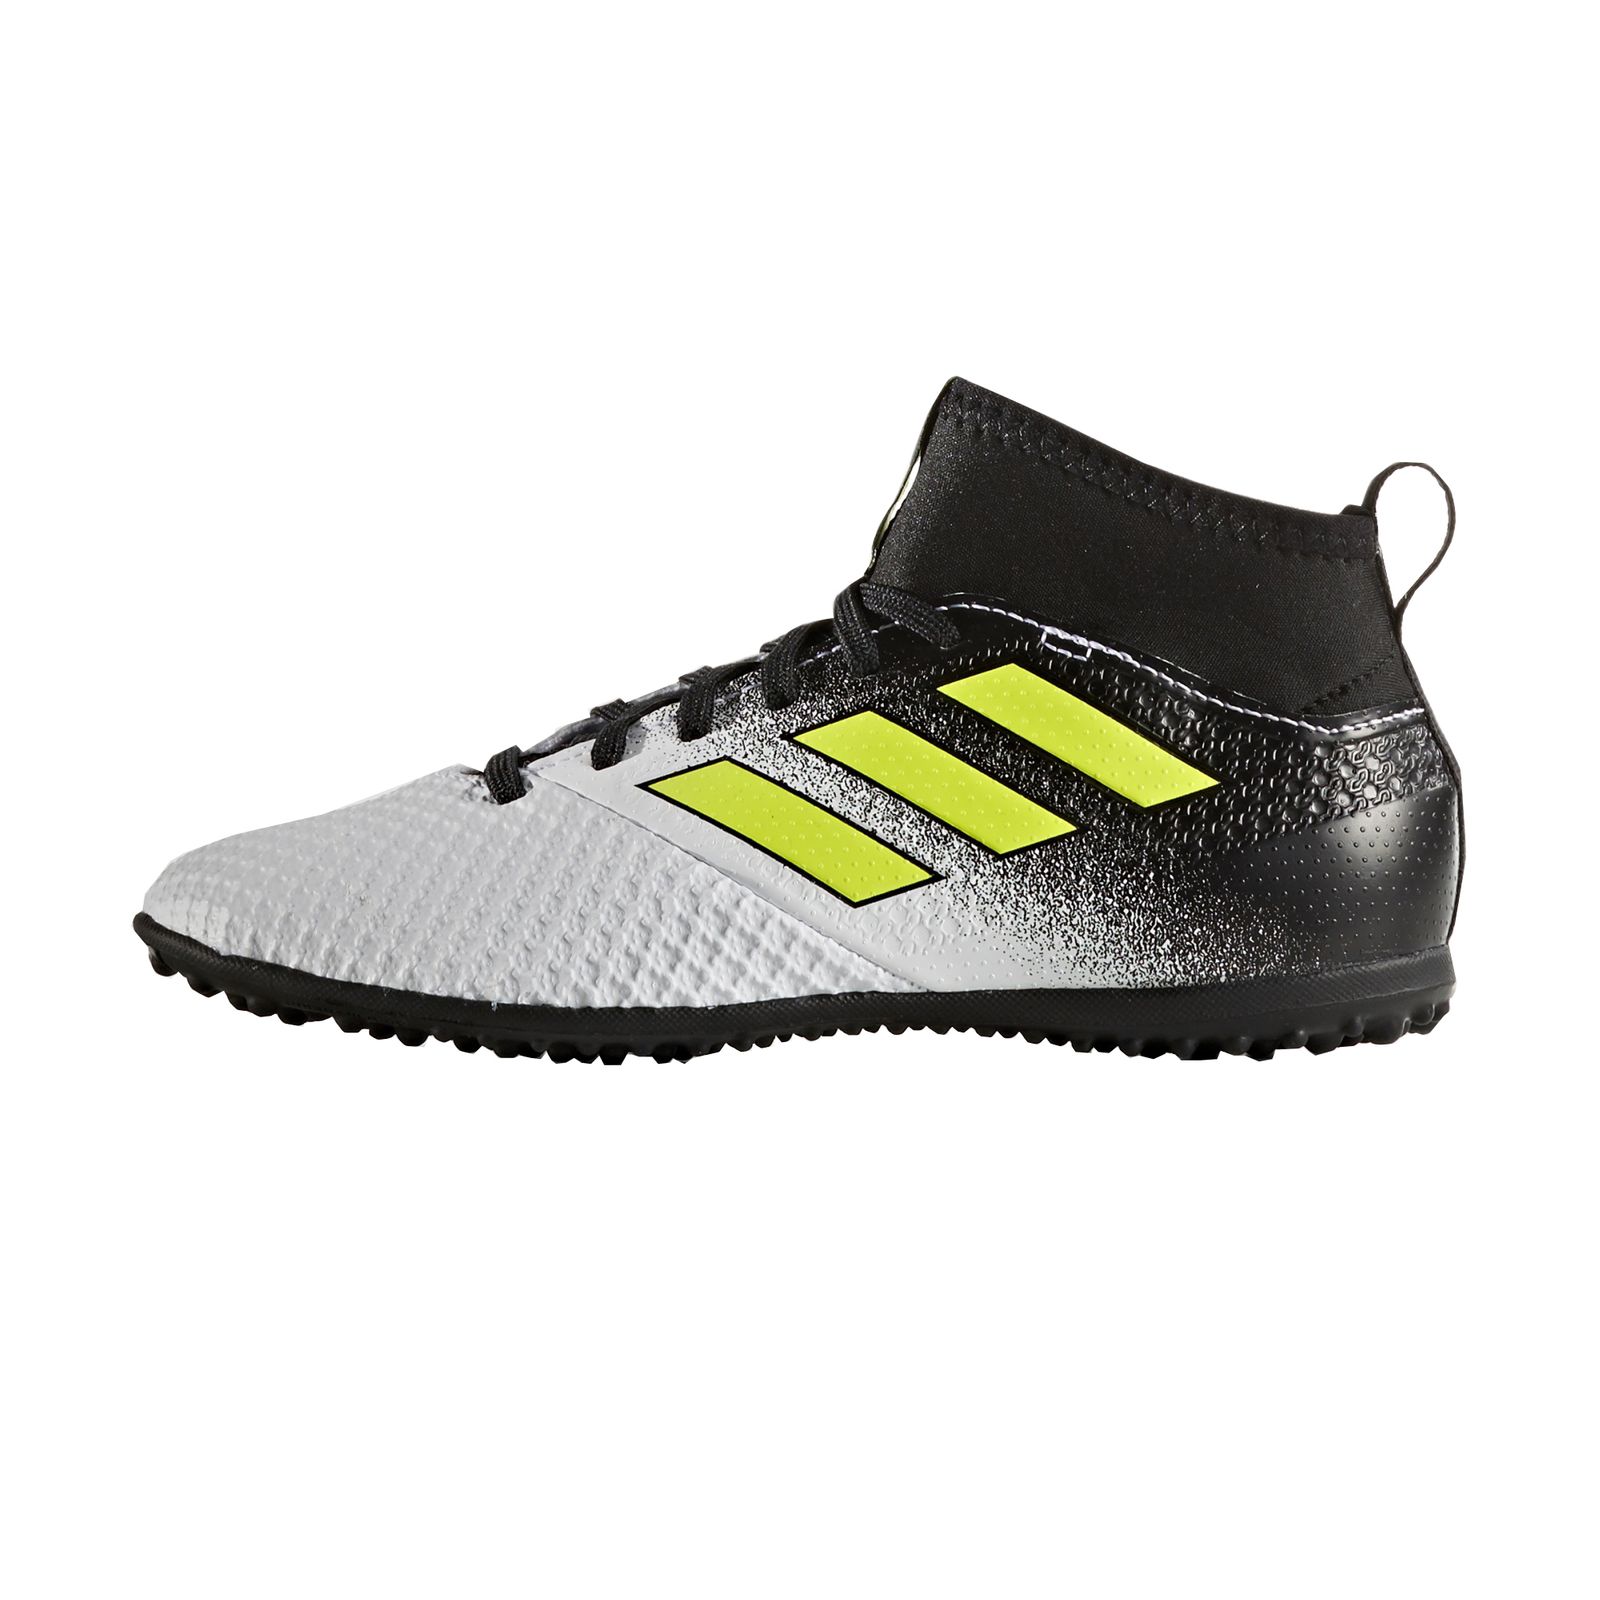  کفش فوتبال بچگانه آدیداس مدل ACE TANGO17.3 S77085 -  - 1